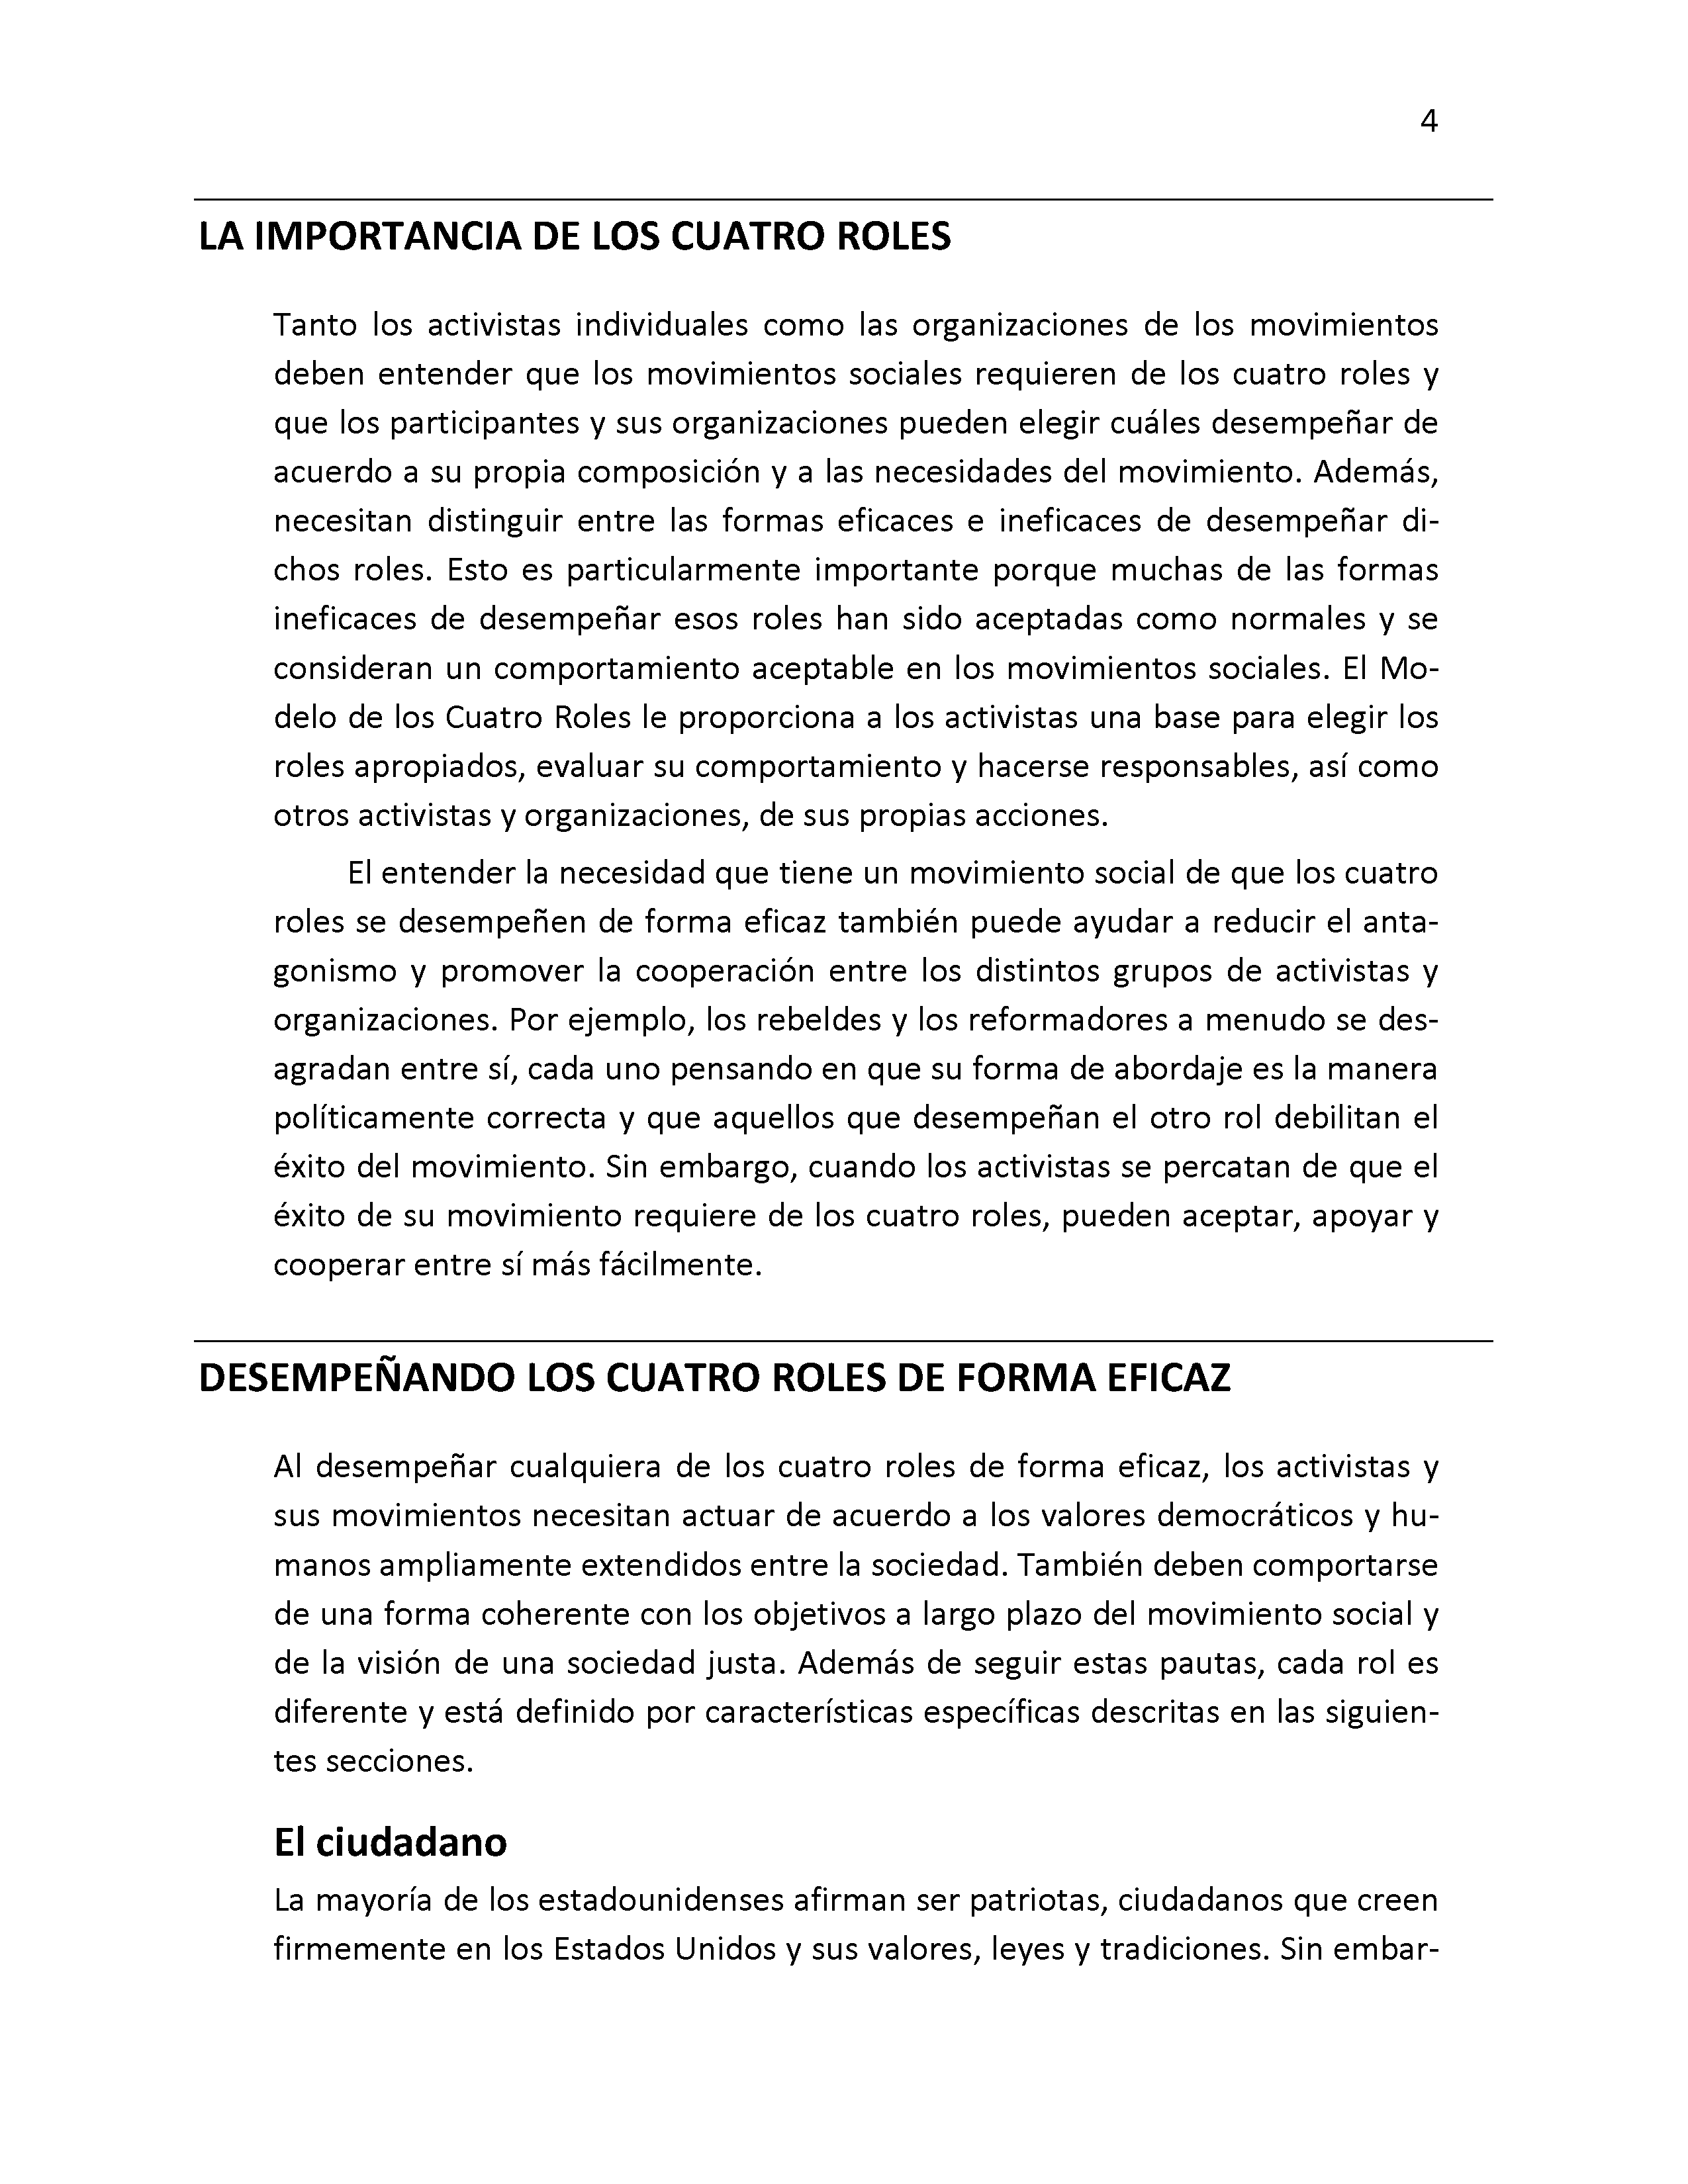 Hacer la democracia (Capitulos 2-4)